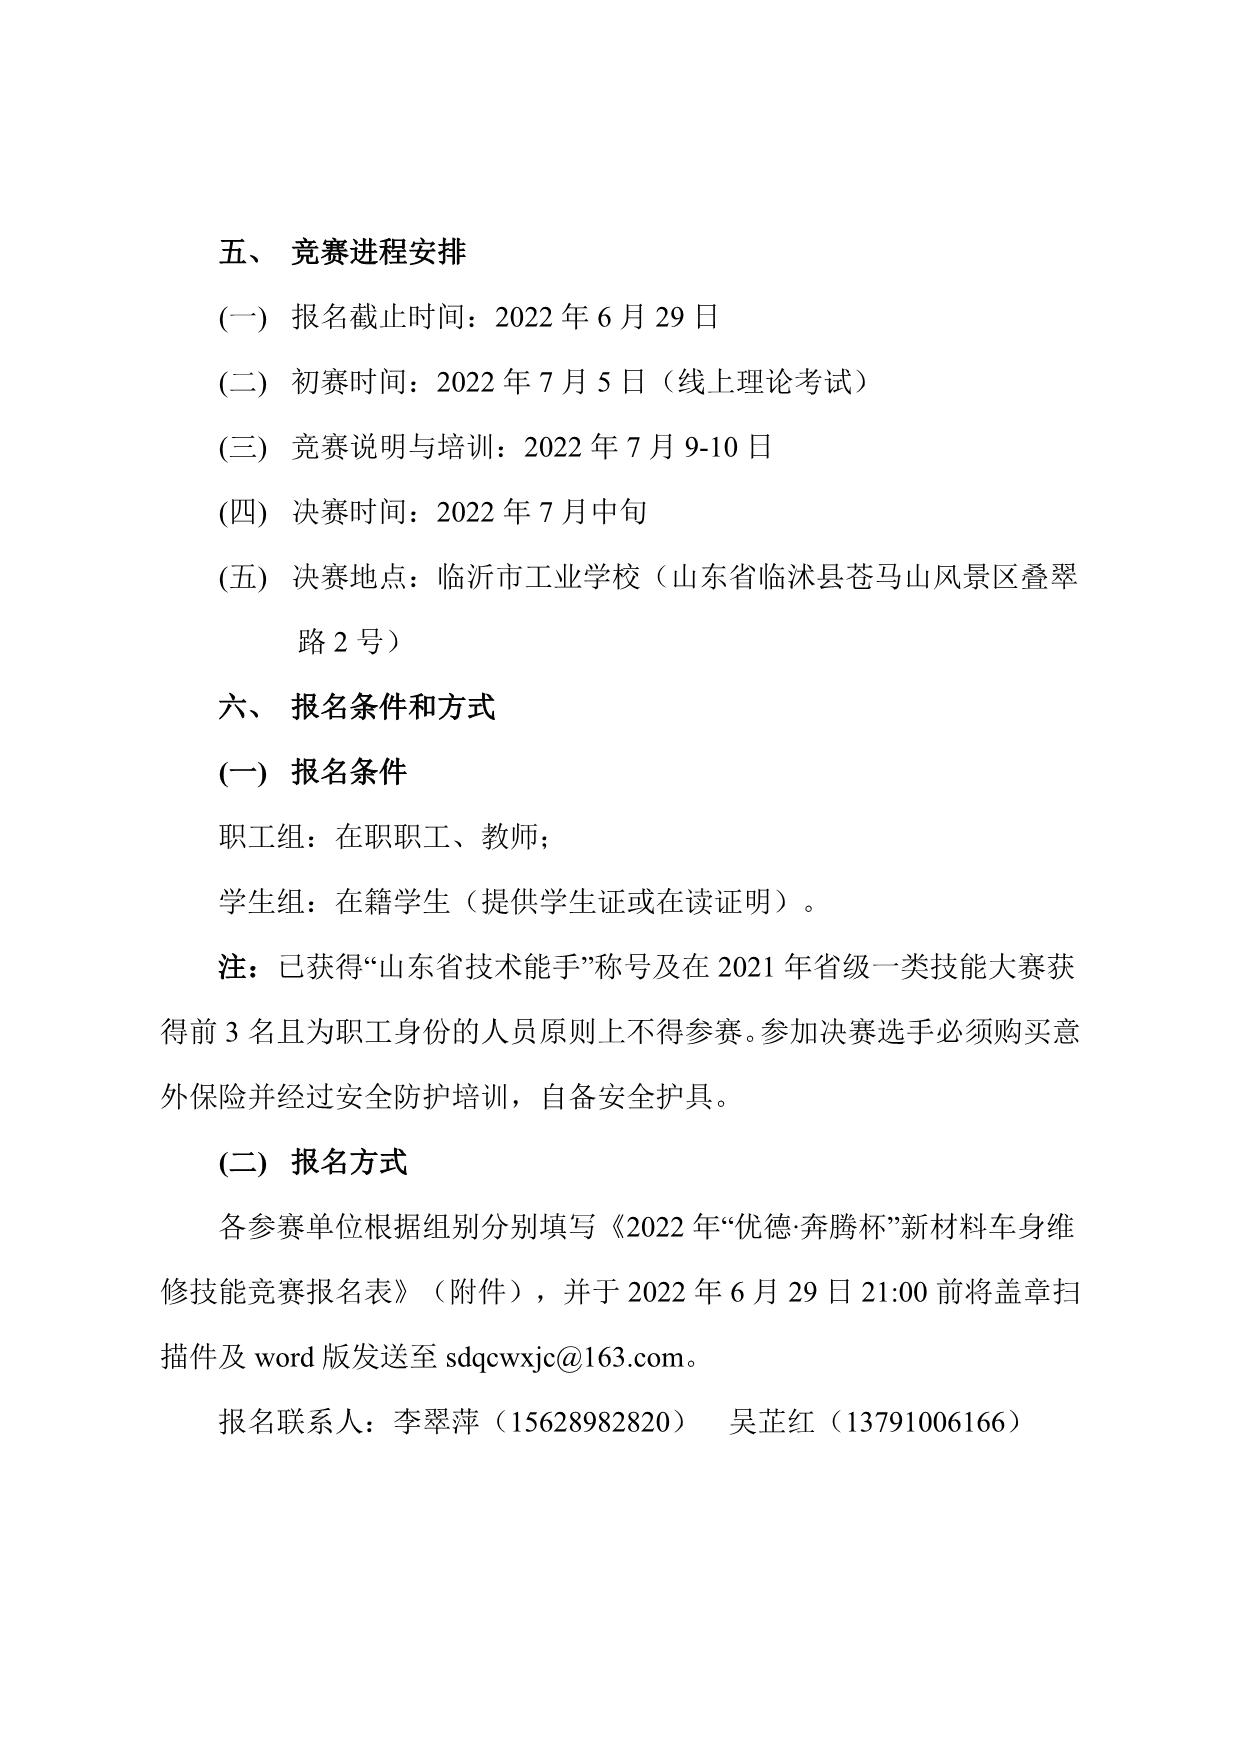 202211关于举办“山东省‘技能兴鲁”技能大赛-新材料车身修理职业技能竞赛的通知_3.jpg